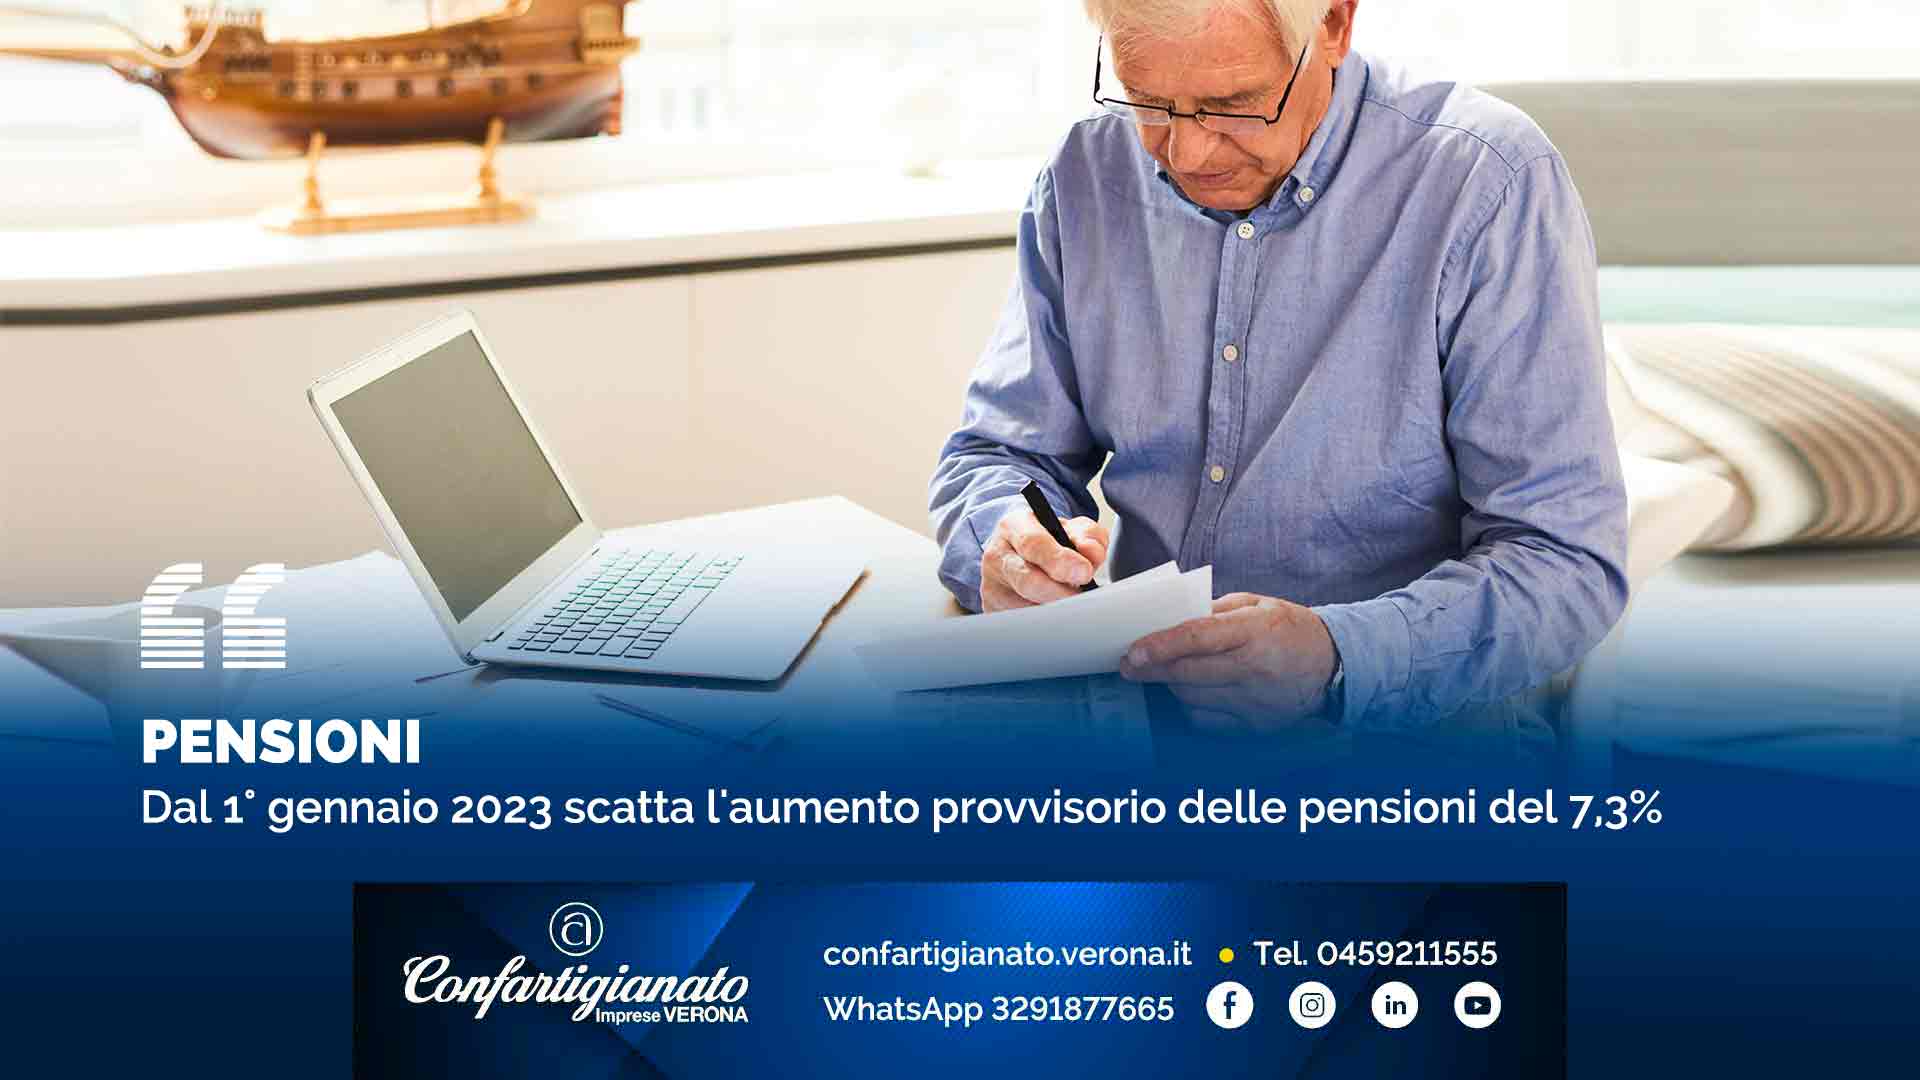 PENSIONI - Dal 1° gennaio 2023 scatta l'aumento provvisorio delle pensioni del 7,3%